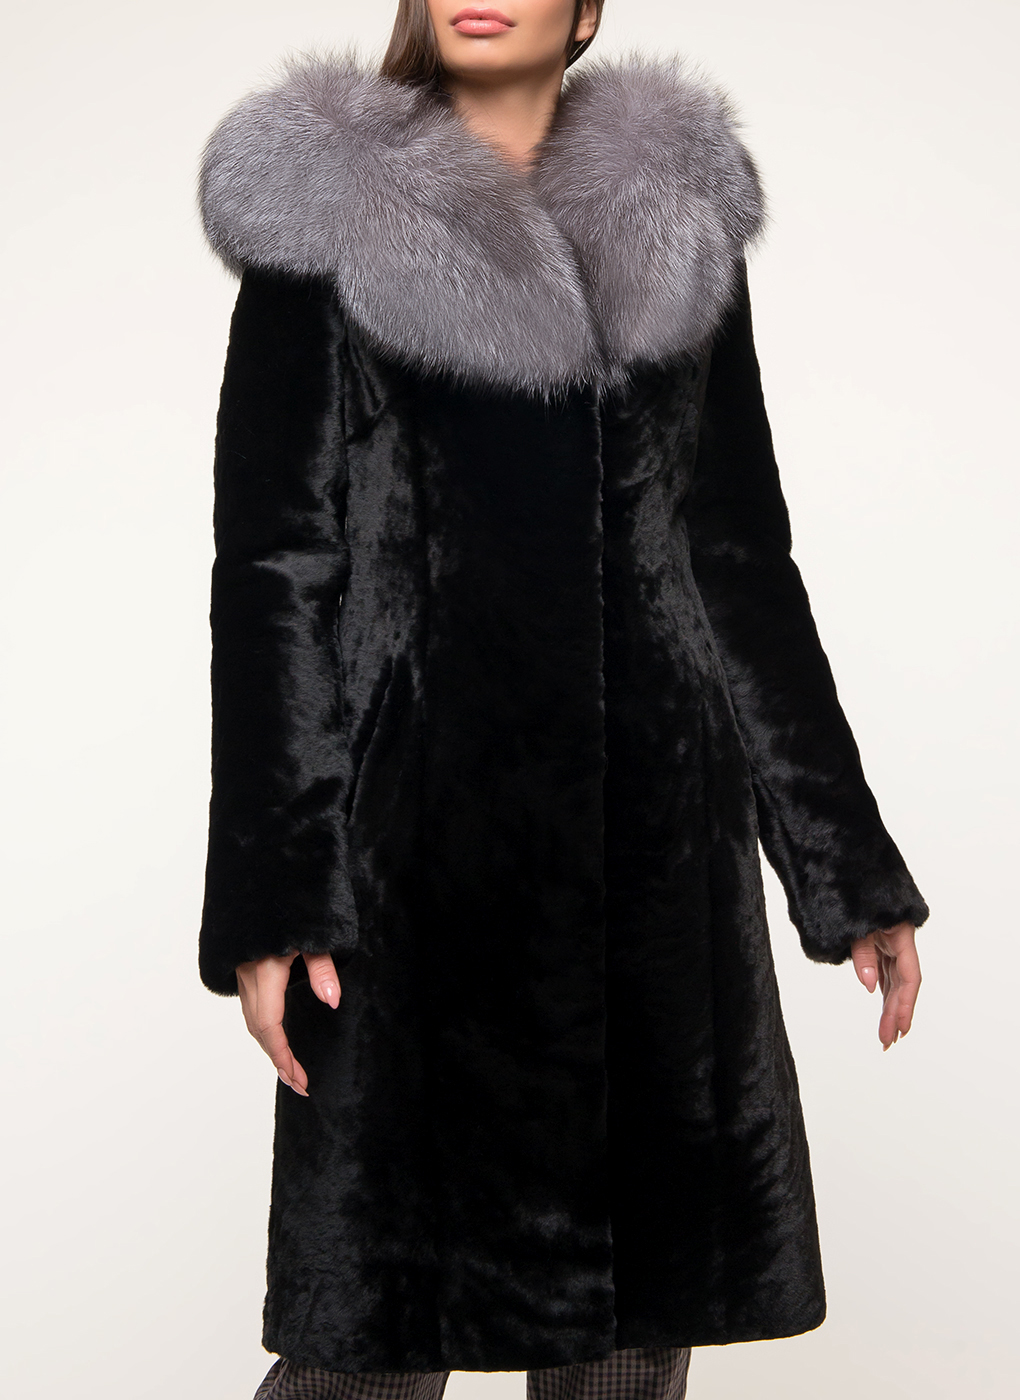 Пальто приталенное из овчины 02, Aliance fur